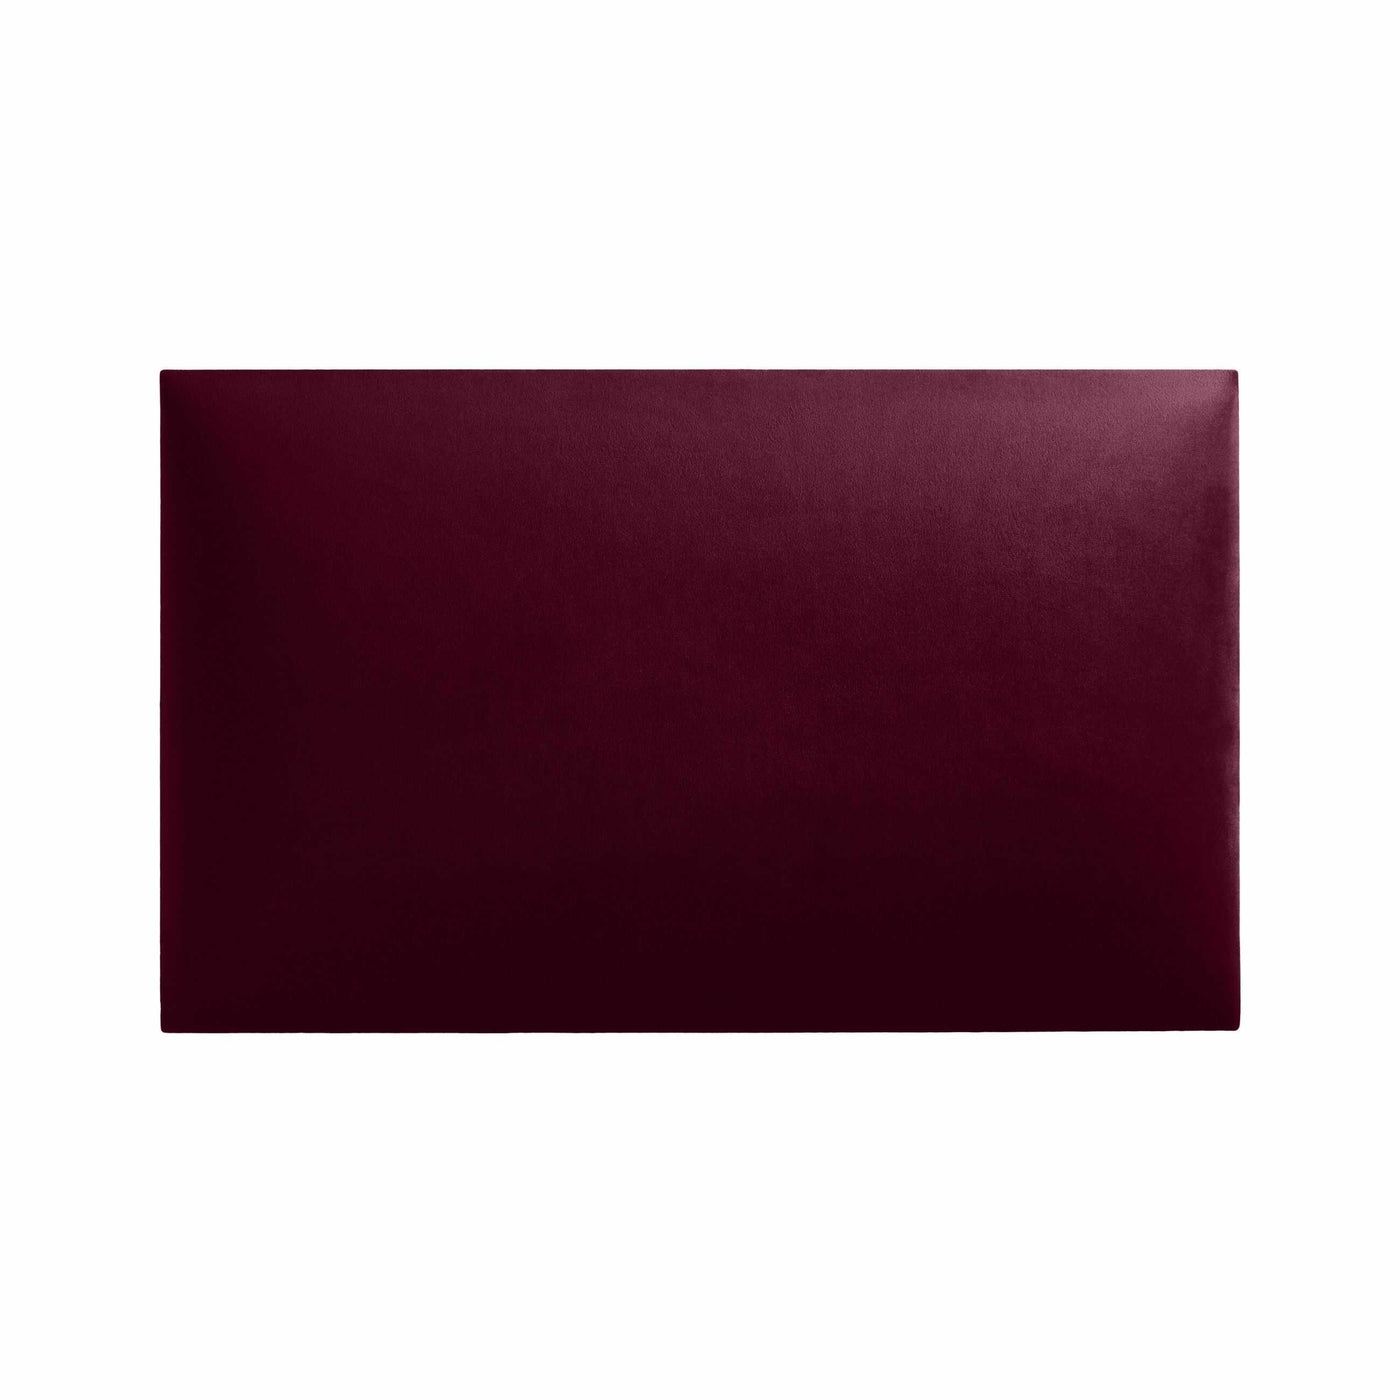 Rechteckiges Wandpolster 50x30 aus Riviera Samt Stoff in der Farbe Bordeaux-Rot RV59